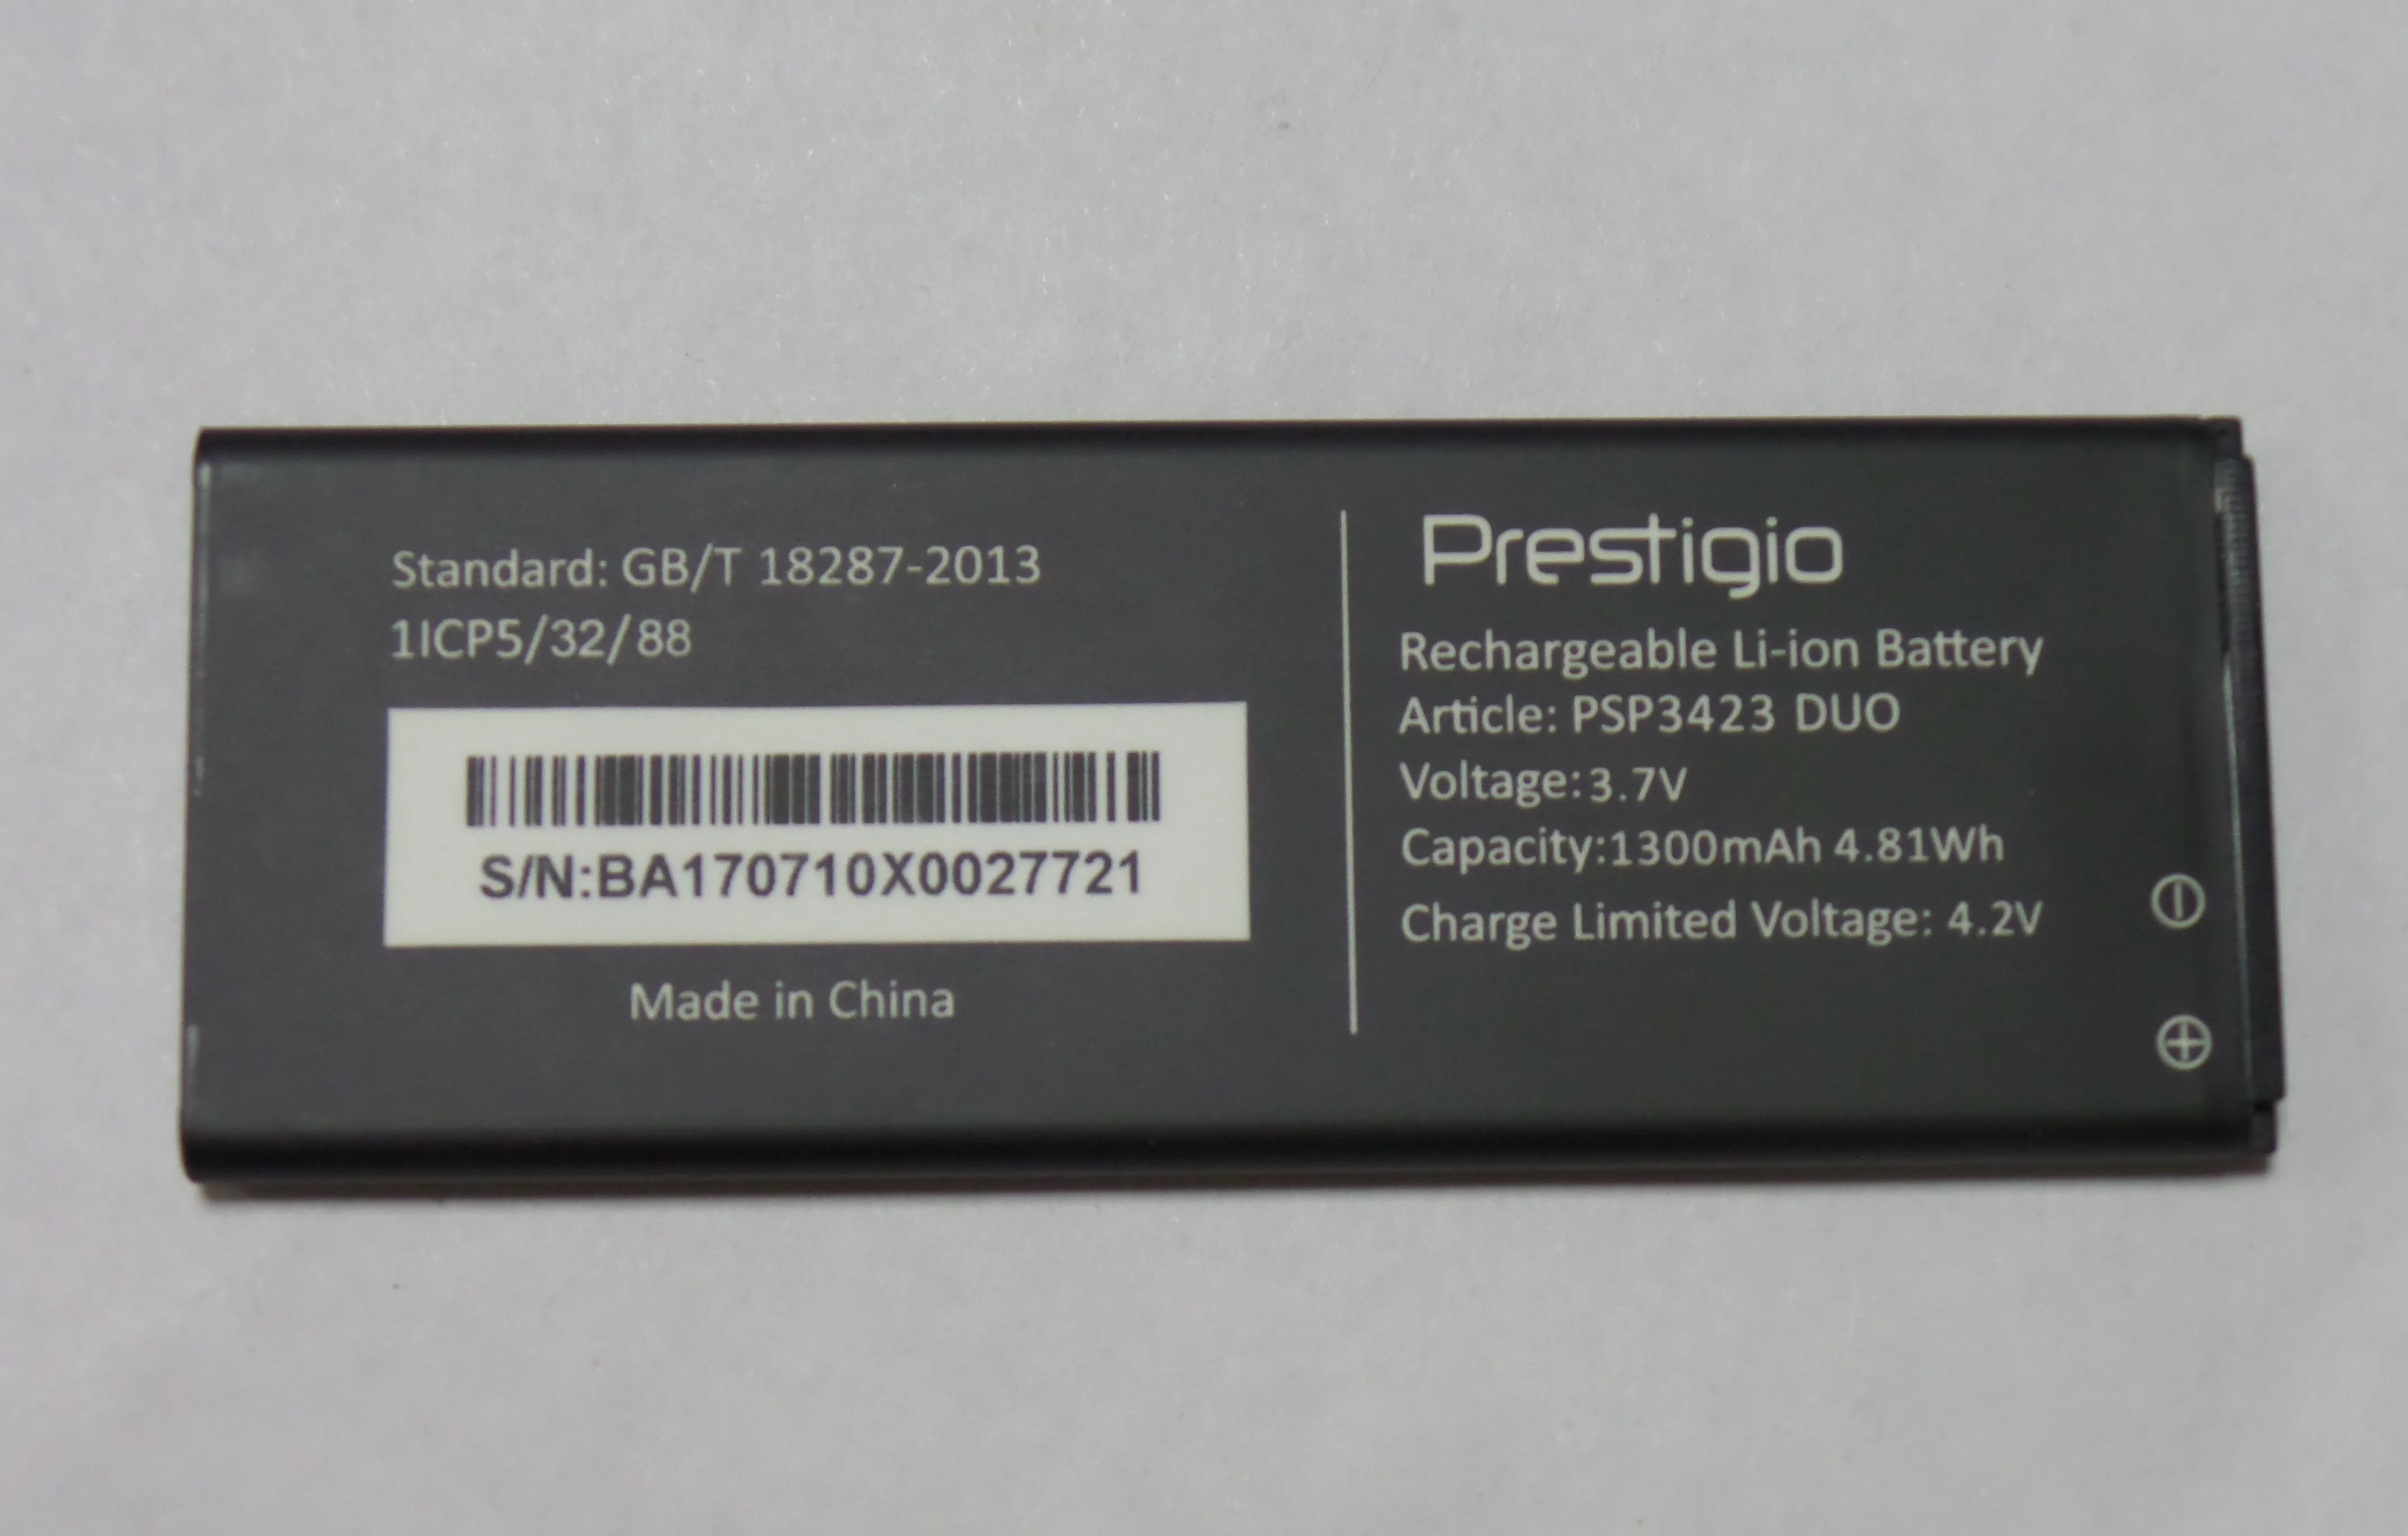 Buy Battery psp3423 duo battery for Prestigio Wize R3 PSP 3423 1300 mAh on